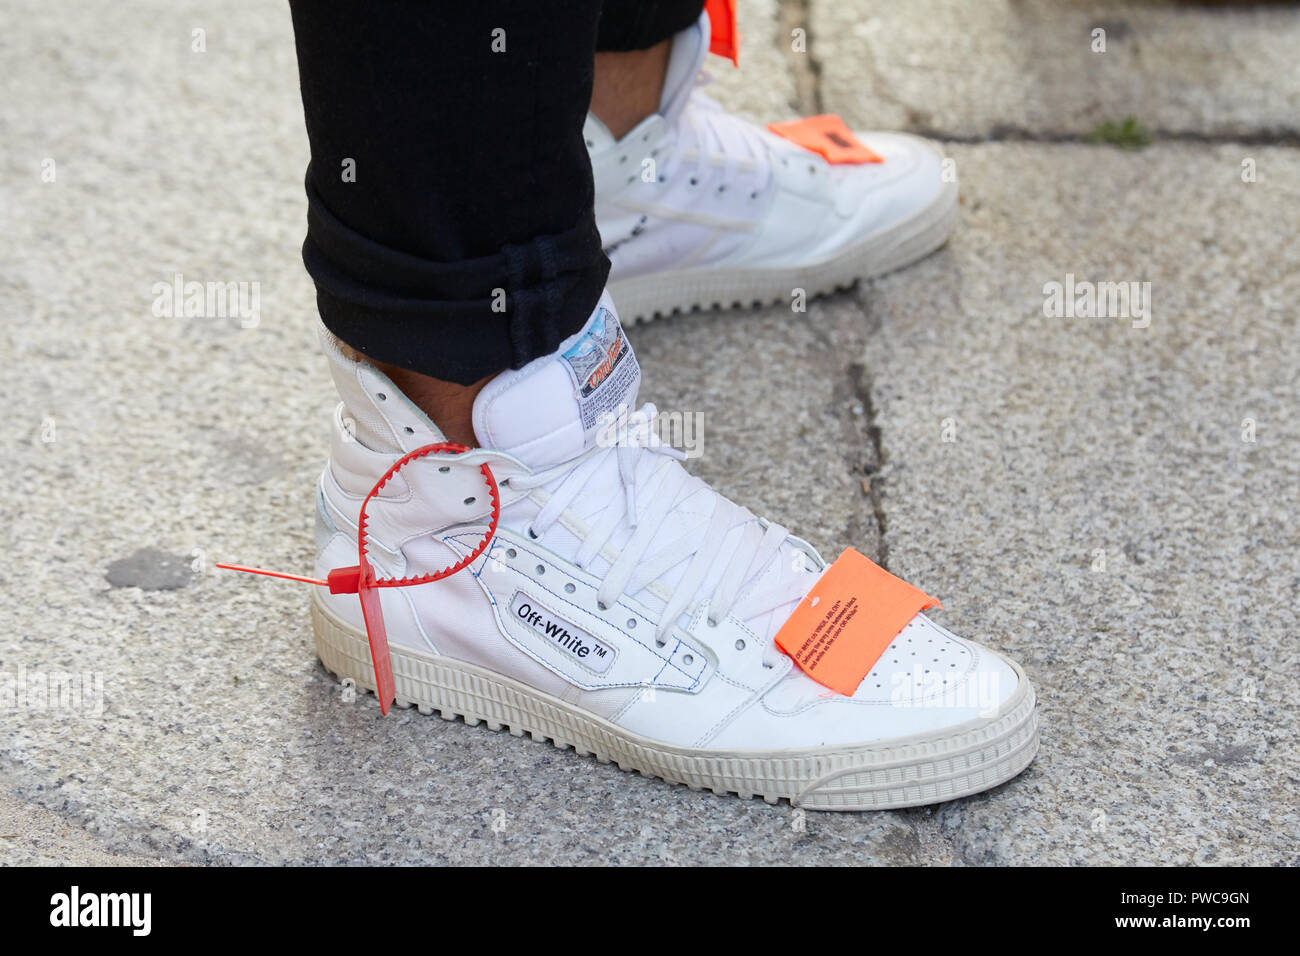 Milán, Italia - 20 de septiembre de 2018: el hombre blanco con zapatillas de deporte blanco apagado de Show, la Semana de la moda de Milán street style